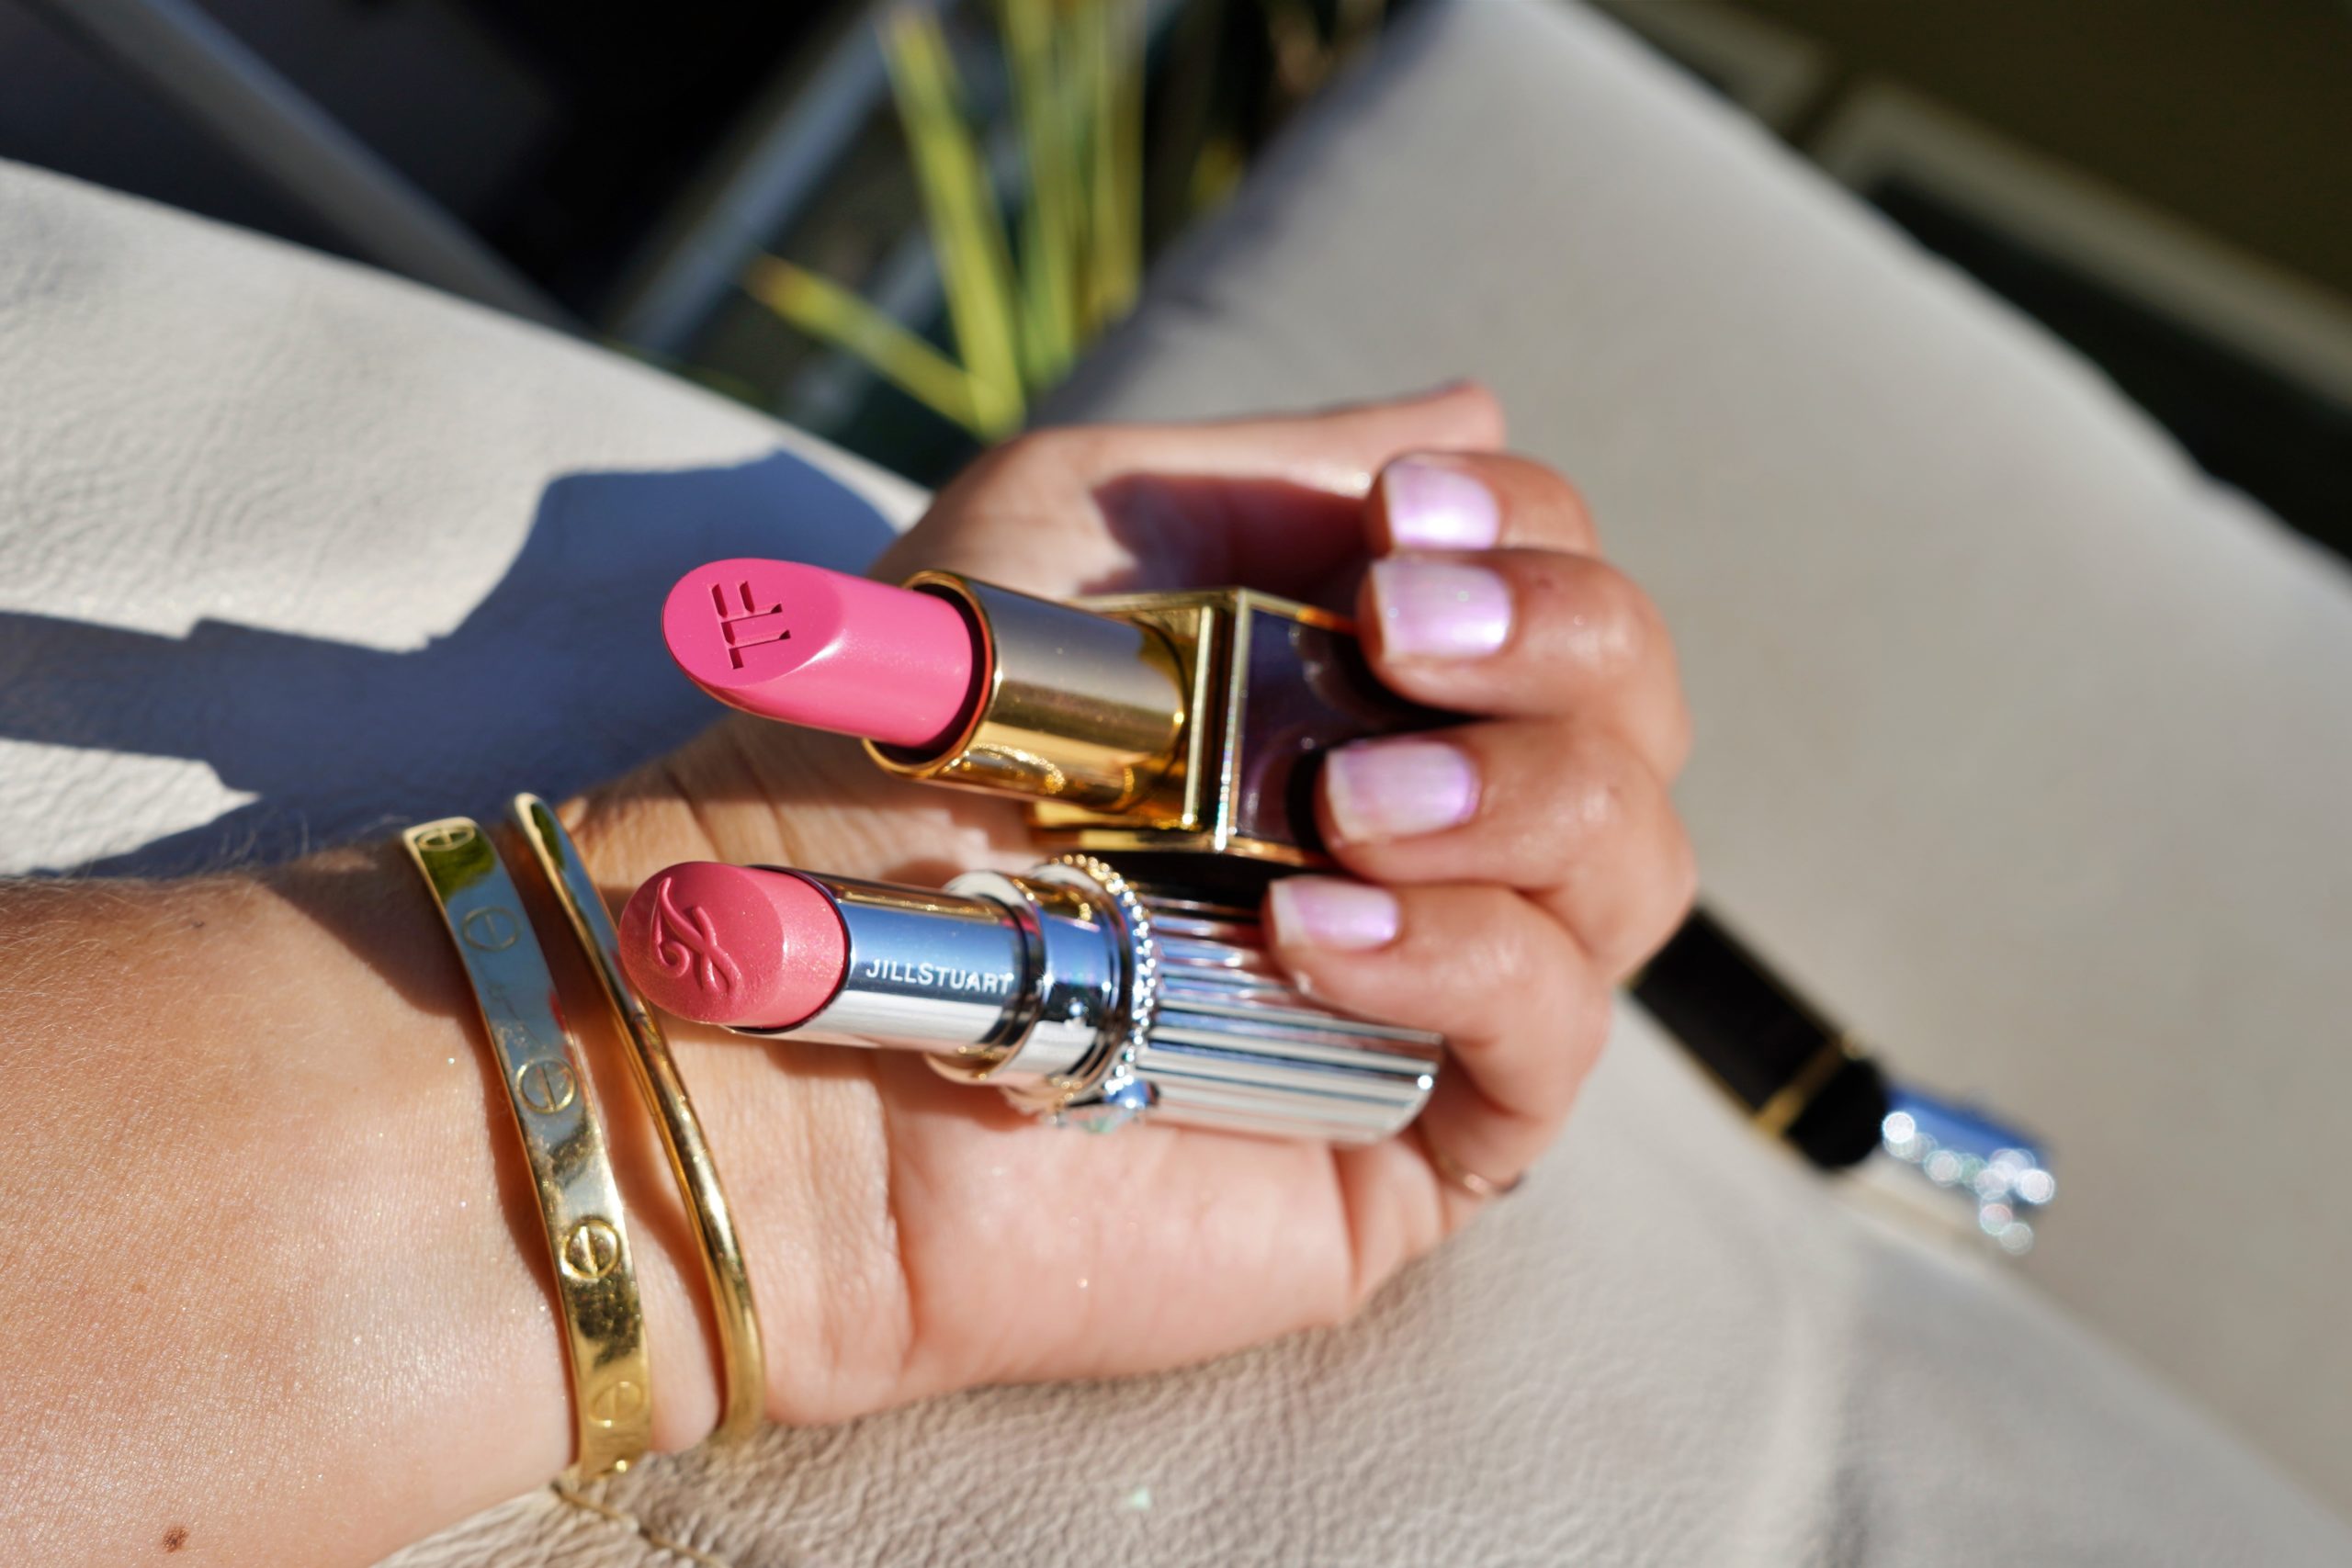 Tom Ford Lip Color in Pretty Persuasive and Jill Stuart Lip Blossom Shiny Satin 04 lipsticks.